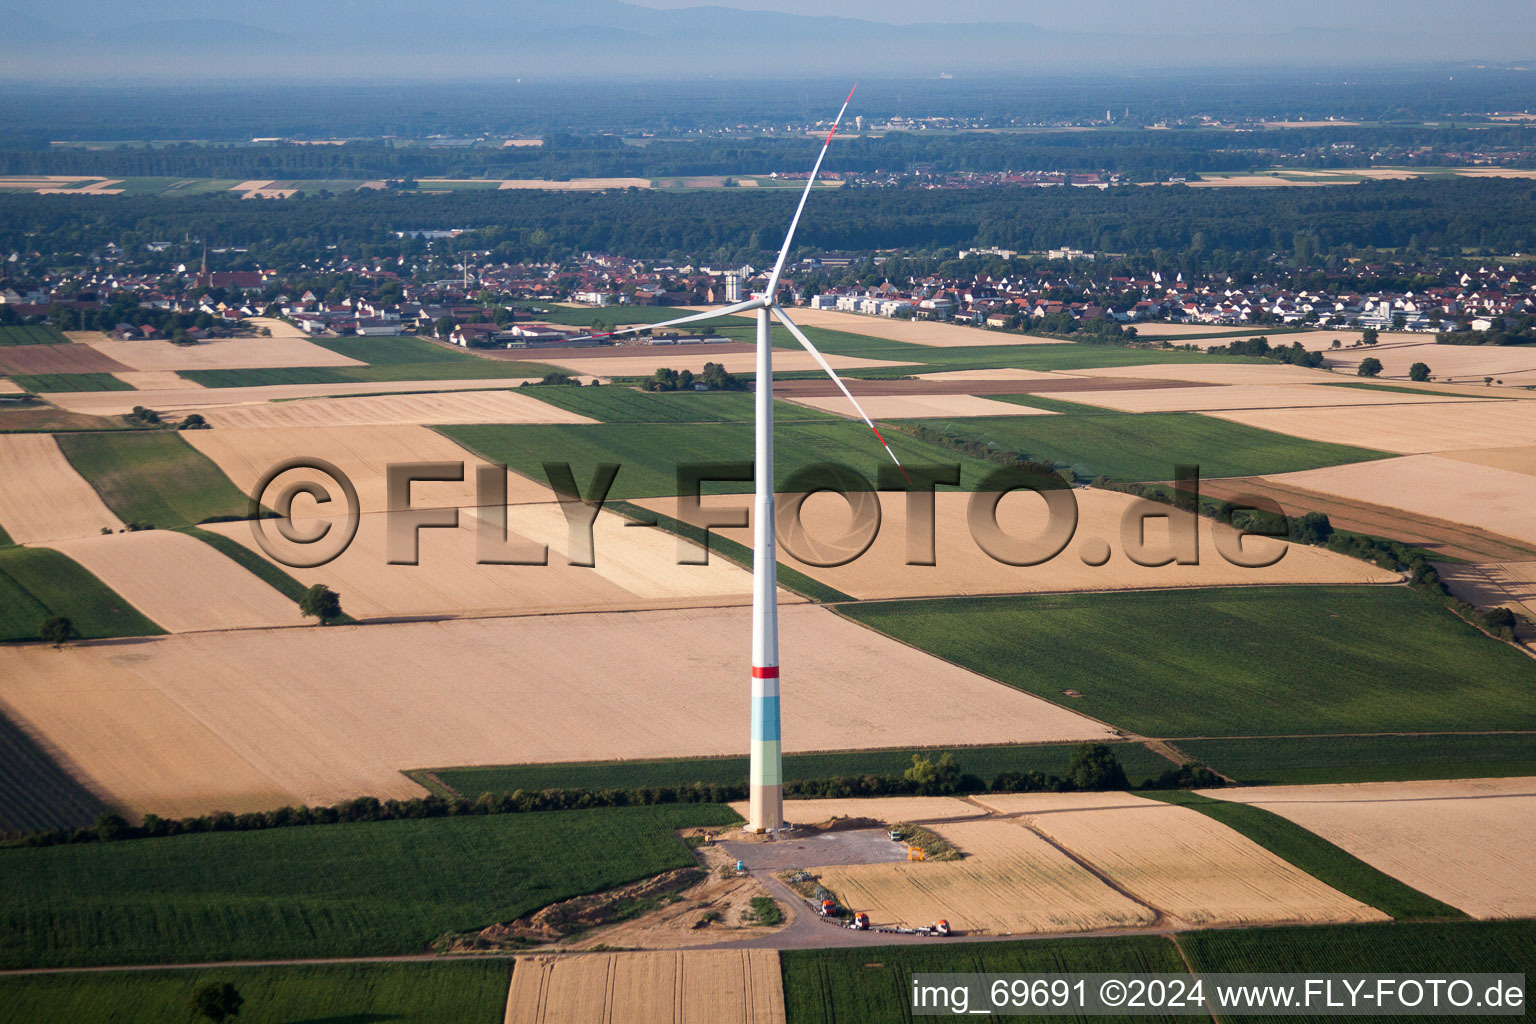 Windparkbau in Offenbach an der Queich im Bundesland Rheinland-Pfalz, Deutschland von oben gesehen